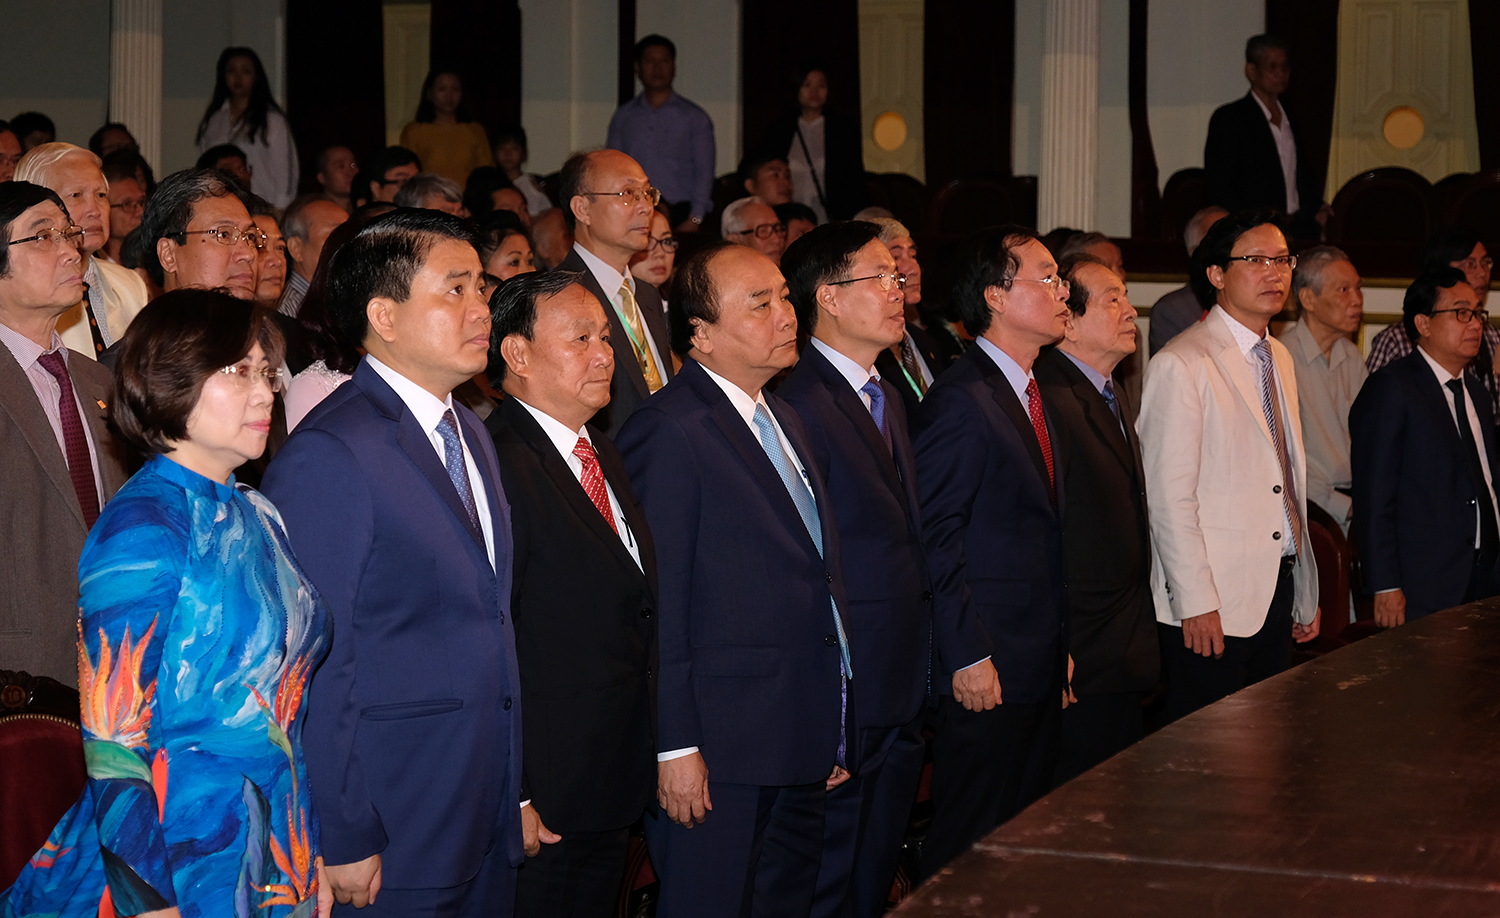 Thủ tướng Nguyễn Xuân Phúc cùng các đại biểu dự buổi lễ. - Ảnh: VGP/Quang Hiếu